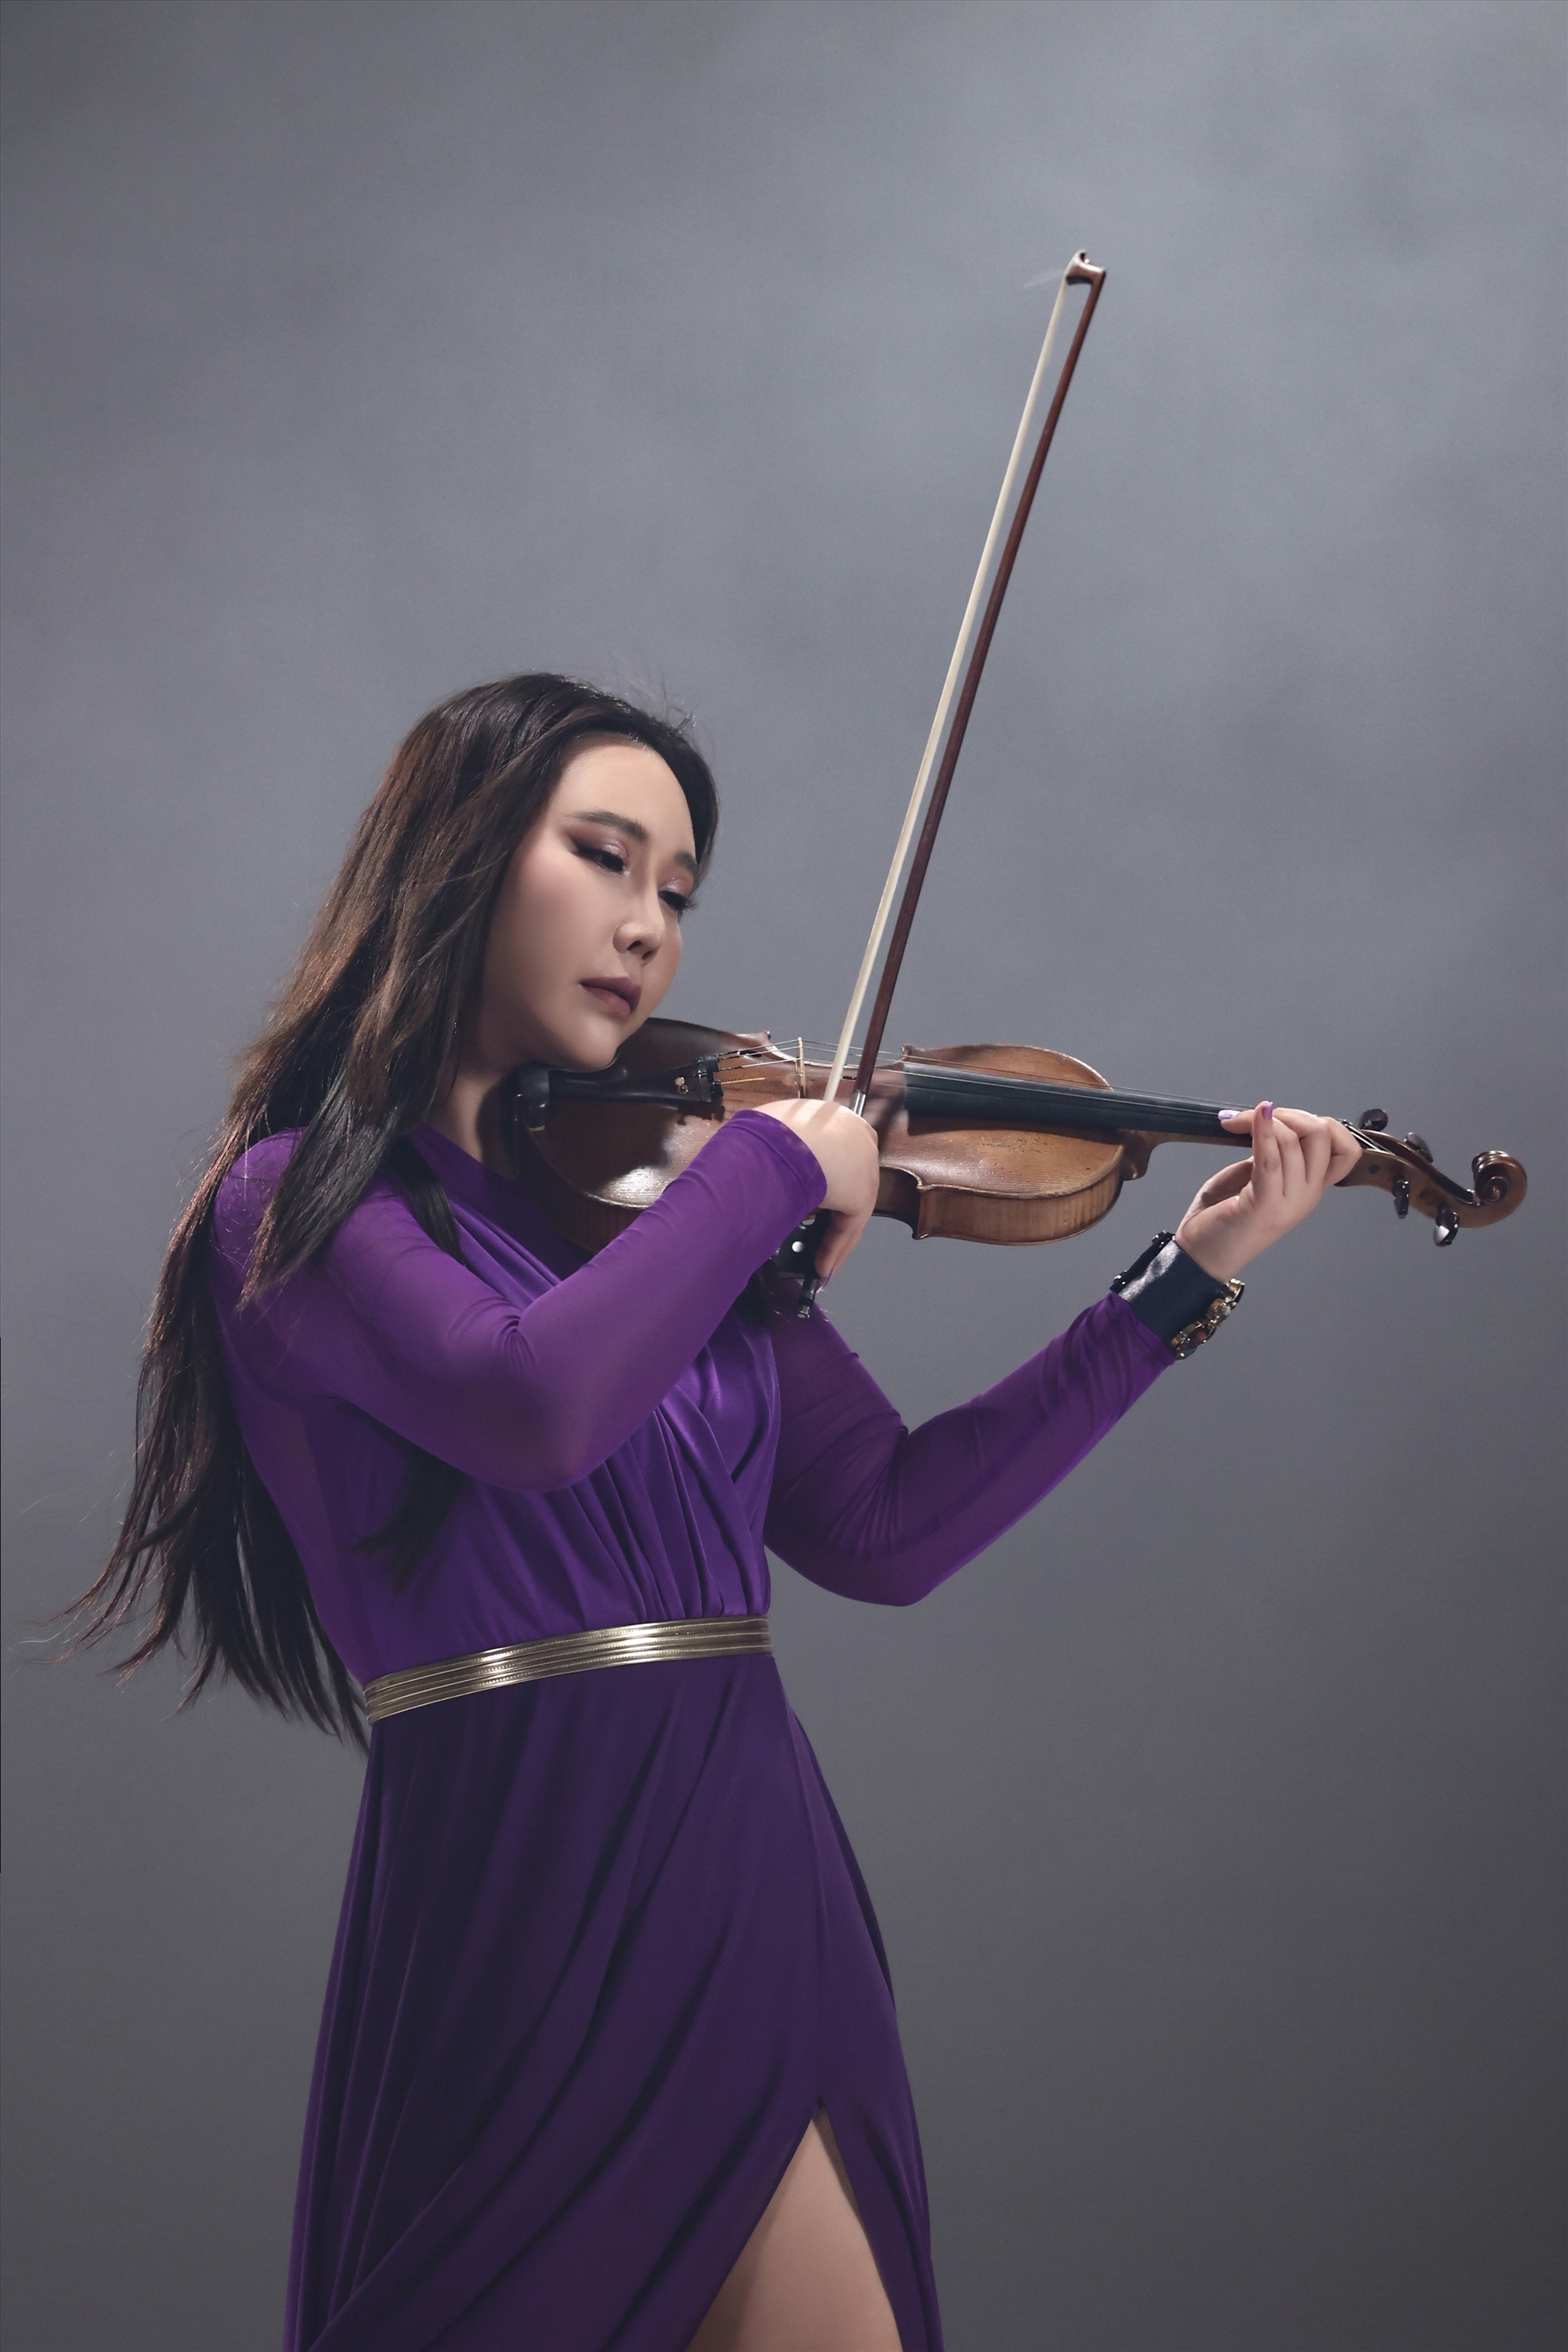 Jmi Ko không còn là cái tên xa lạ với khán giả Việt. Cô được yêu mến khi khi biểu diễn violin qua các bản nhạc Việt gây ấn tượng.